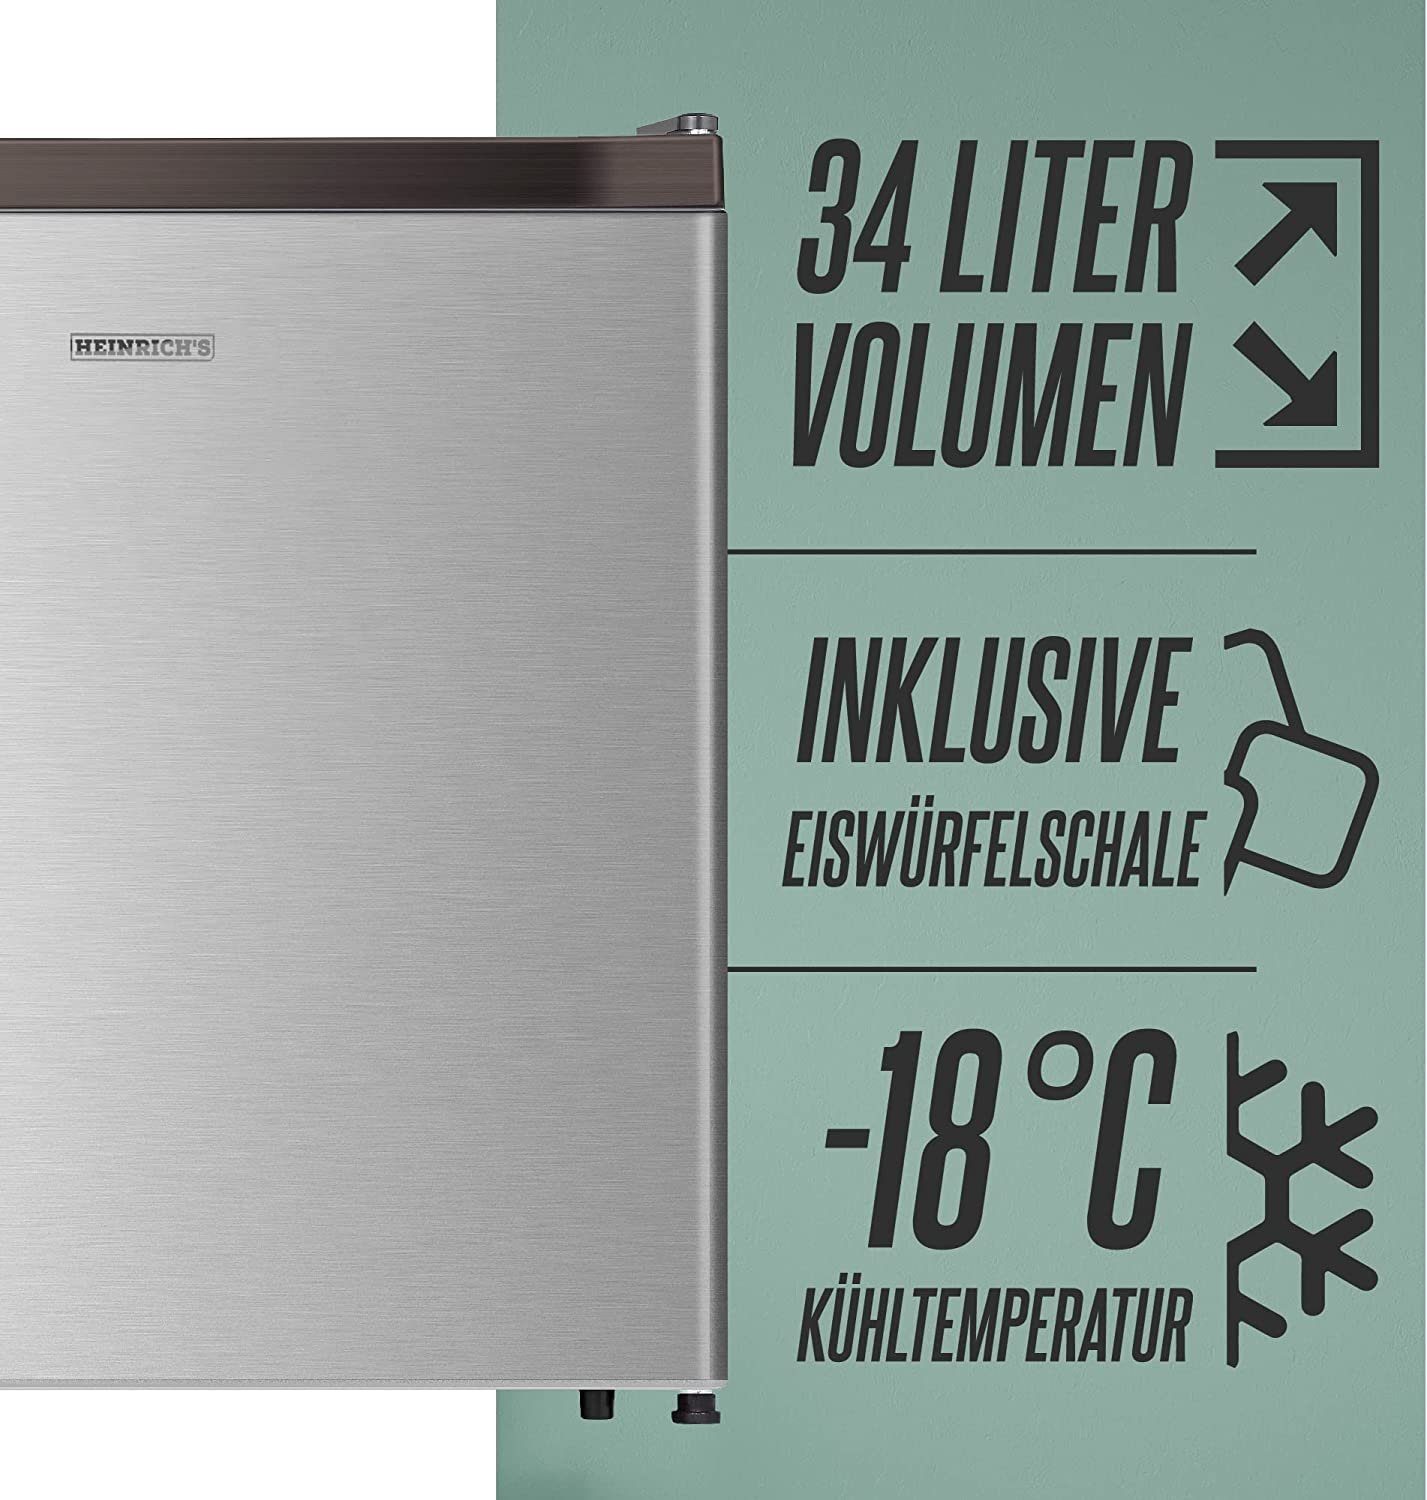 Heinrich´s Gefrierschrank Gefrierbox, breit, 51 cm 39db, Edelstahl Freezer HGB hoch, 4088, 44 cm Tiefkühlen 34L perfekt Mini Freezer